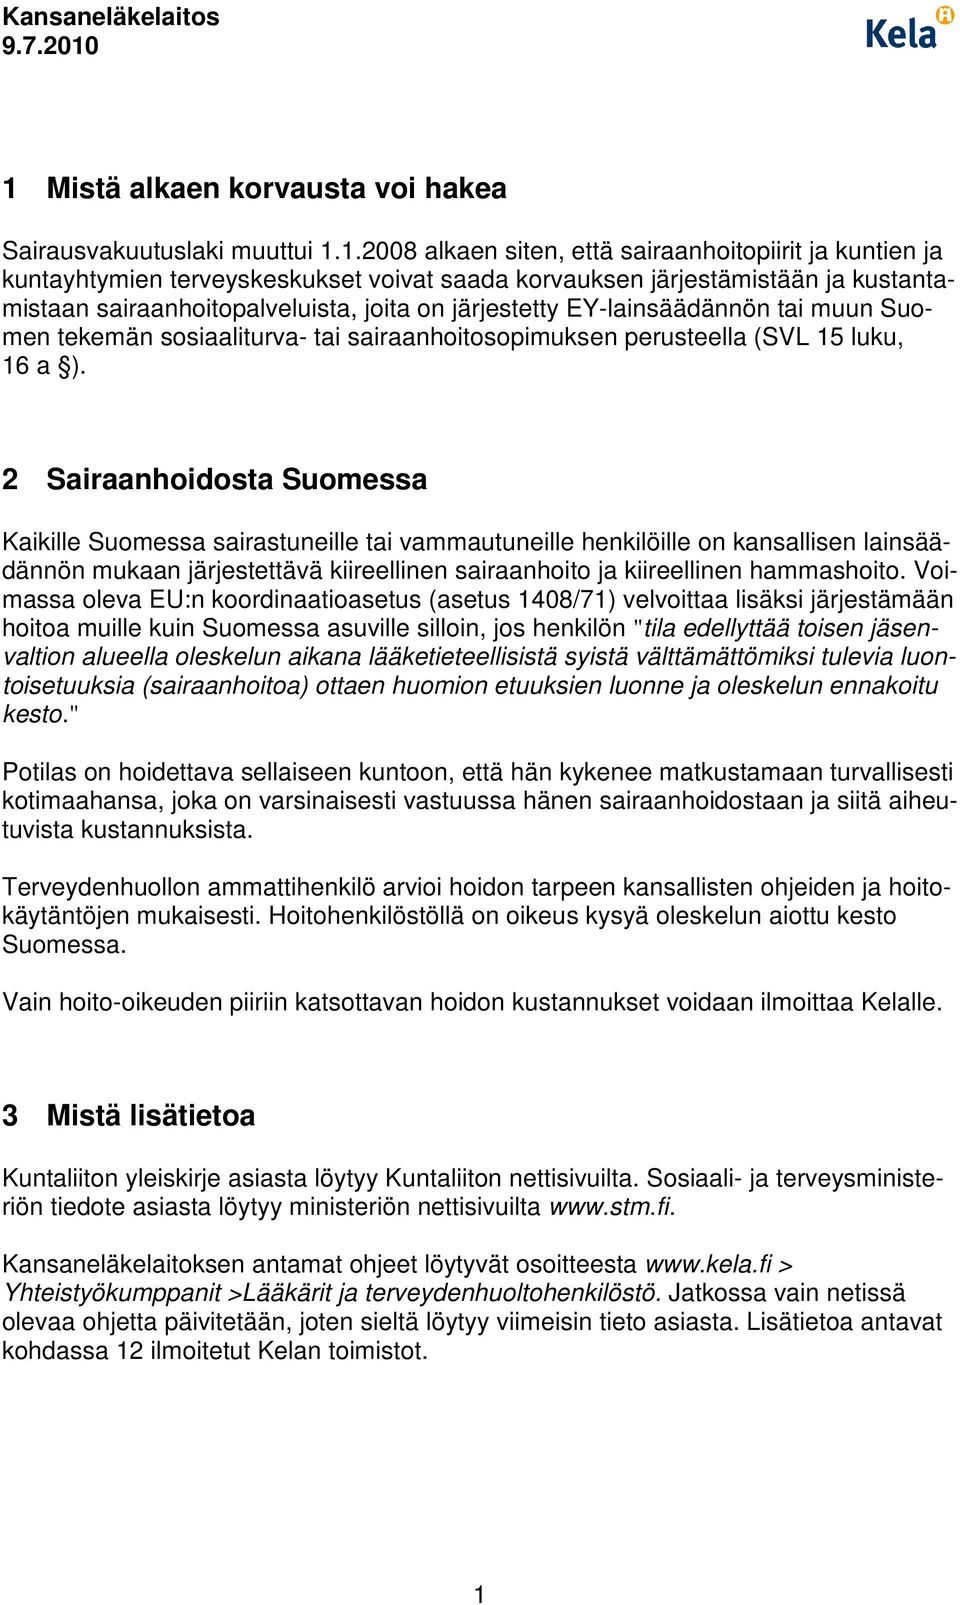 2 Sairaanhoidosta Suomessa Kaikille Suomessa sairastuneille tai vammautuneille henkilöille on kansallisen lainsäädännön mukaan järjestettävä kiireellinen sairaanhoito ja kiireellinen hammashoito.